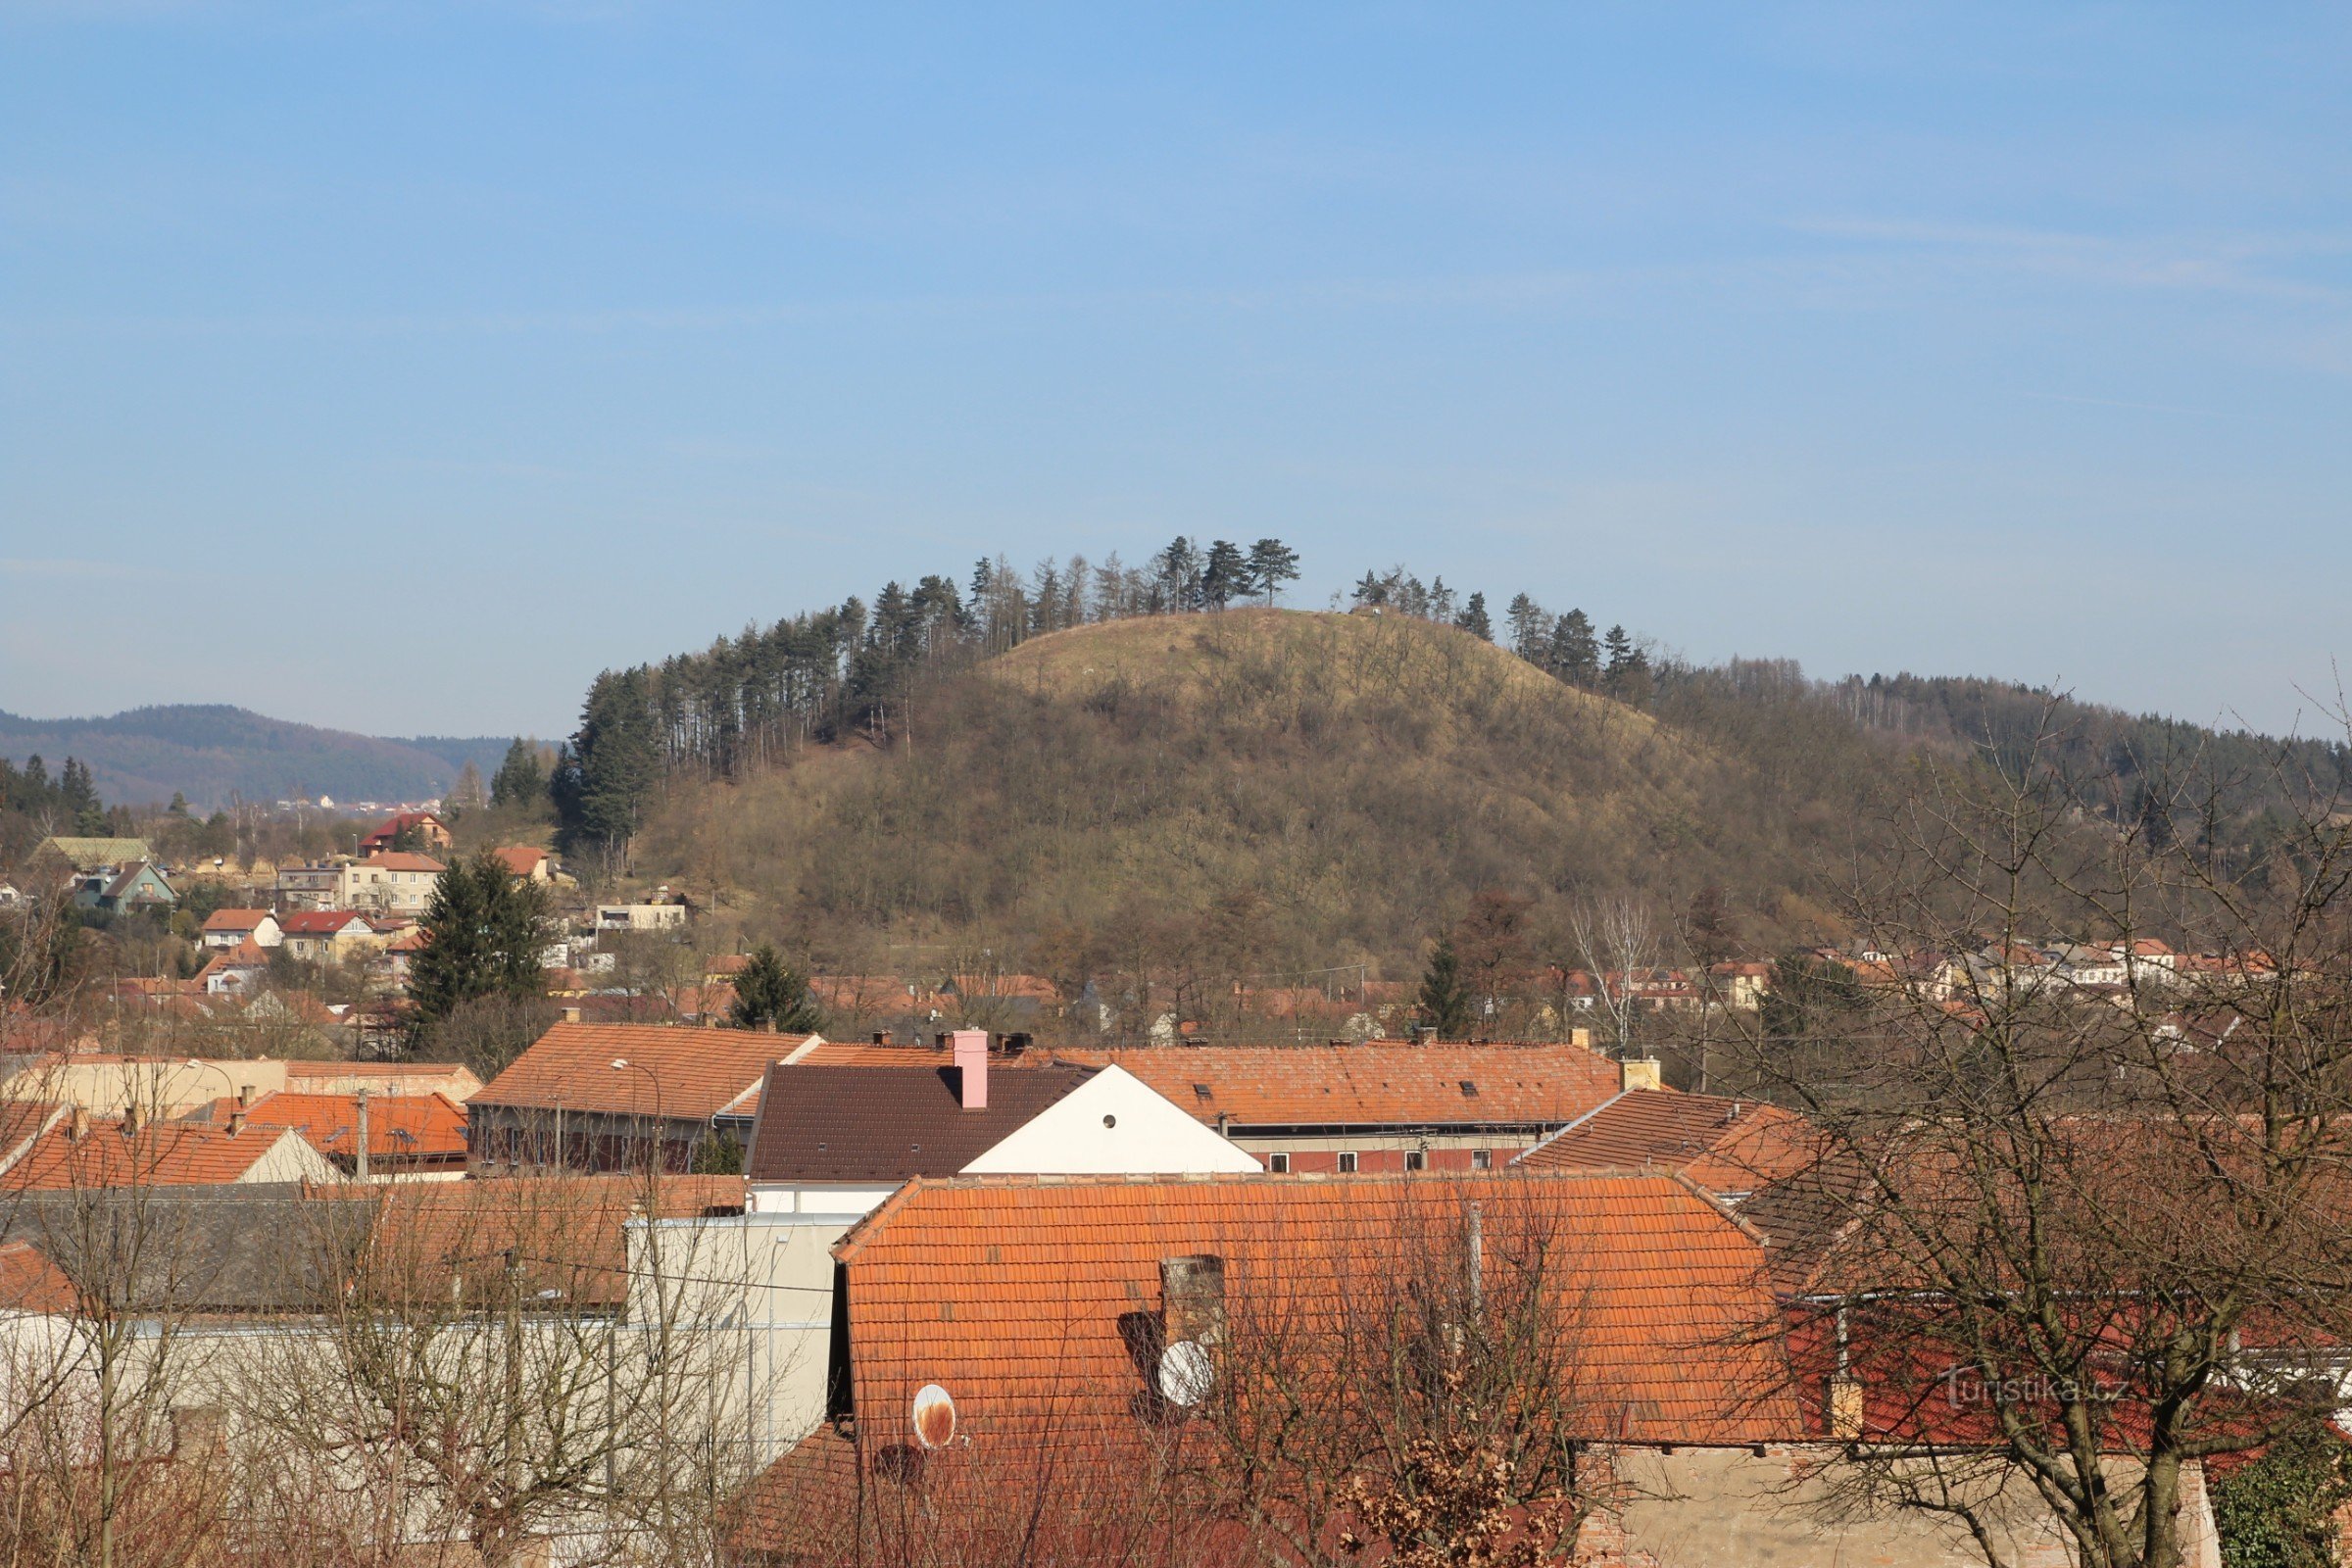 Widok przez Svitávkę na wzgórze Hradisko